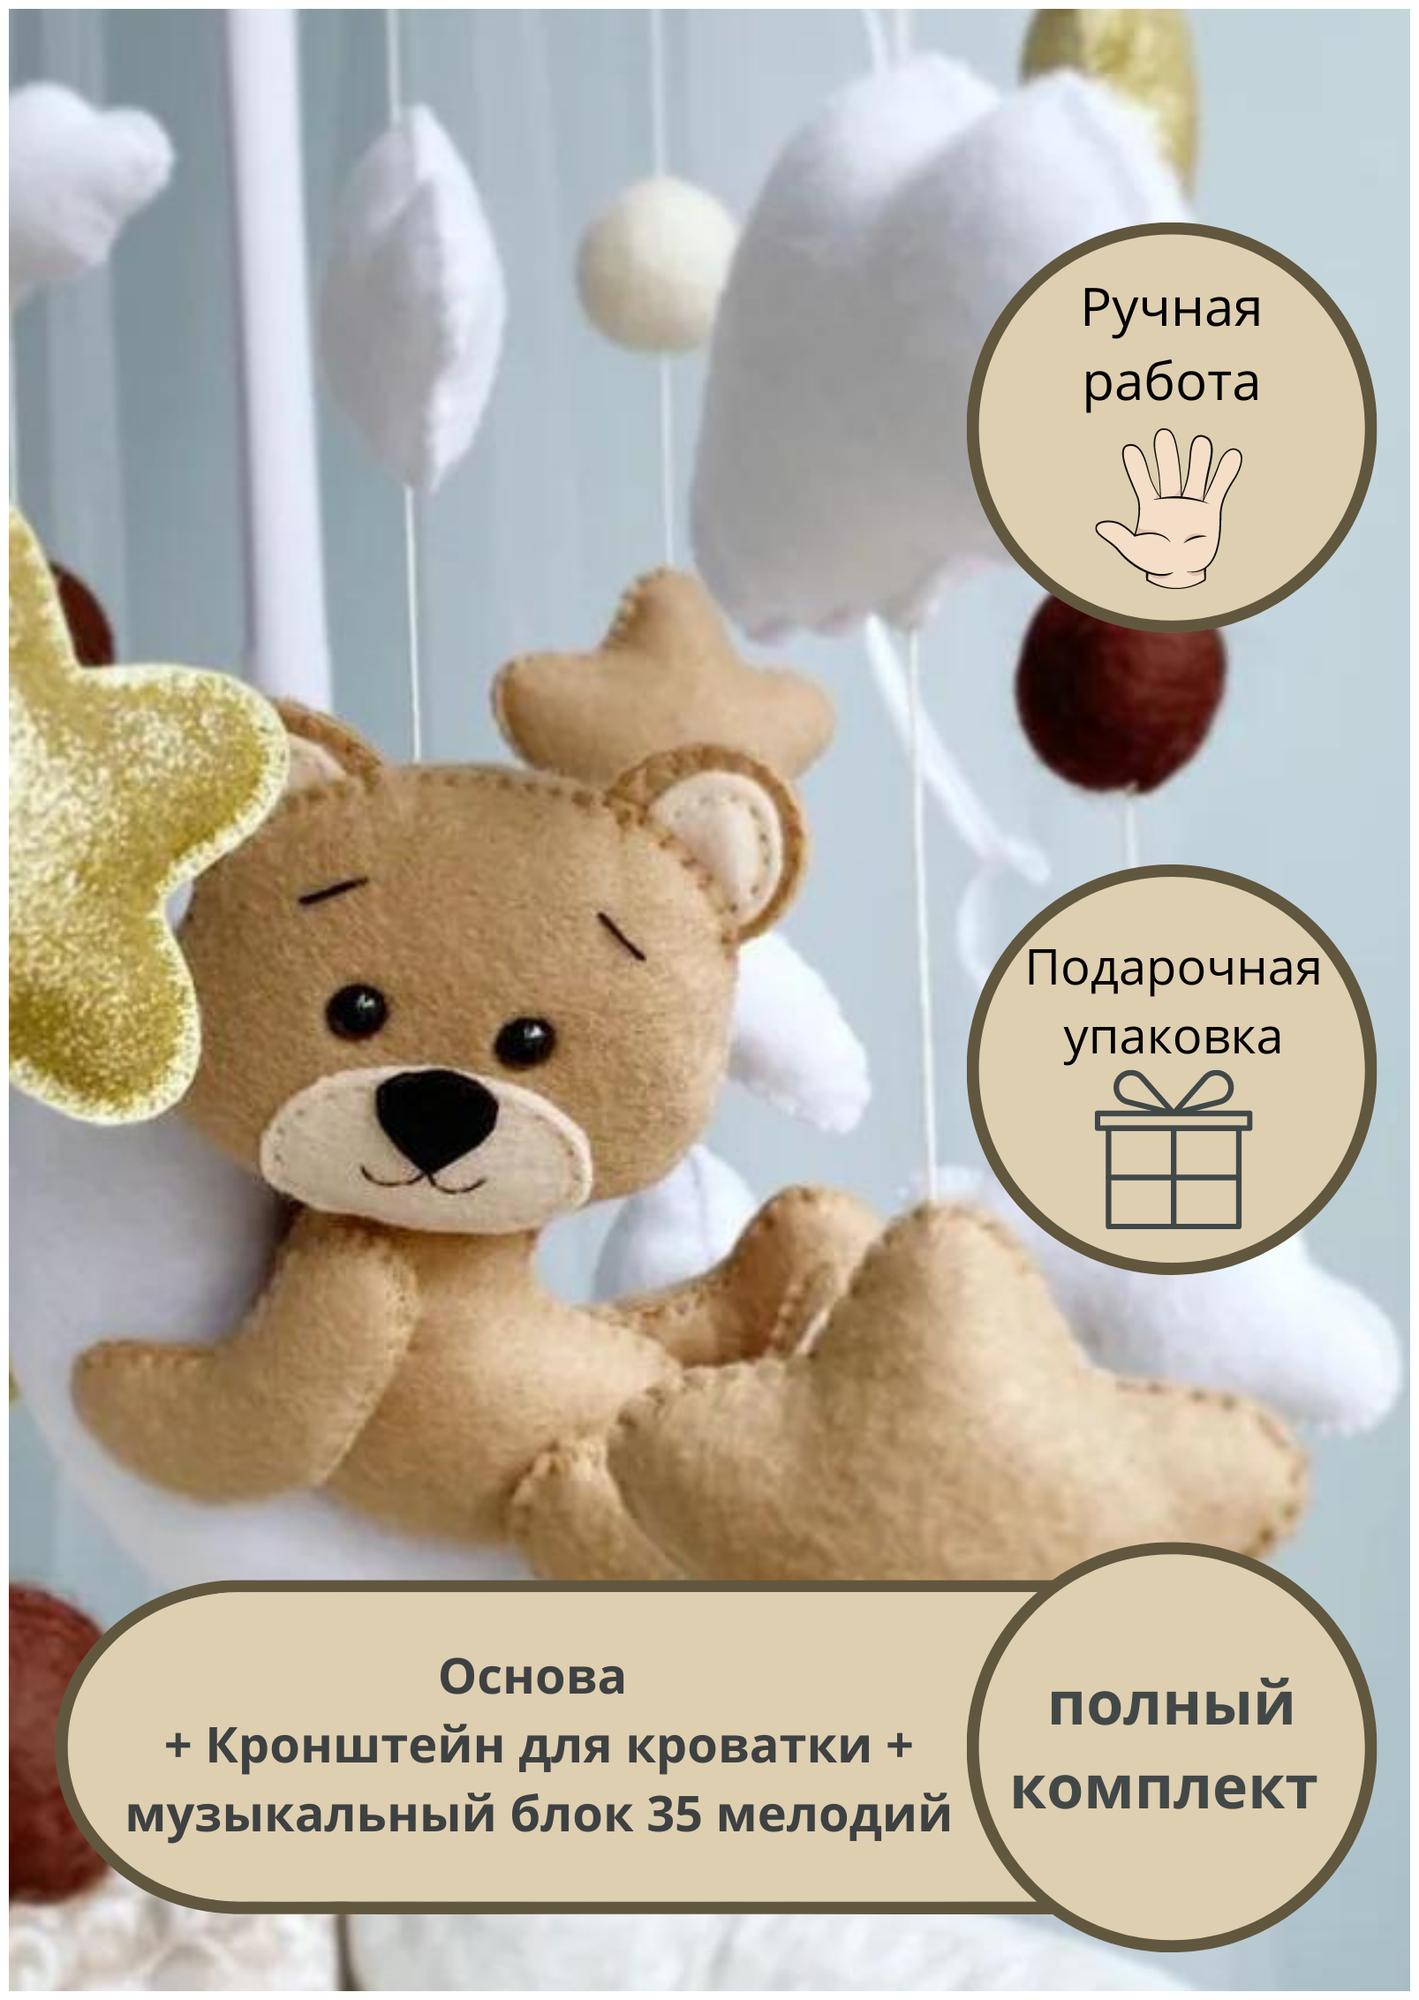 Мобиль музыкальный для детской кроватки Сплюшки Мобили "Мишка с золотом"